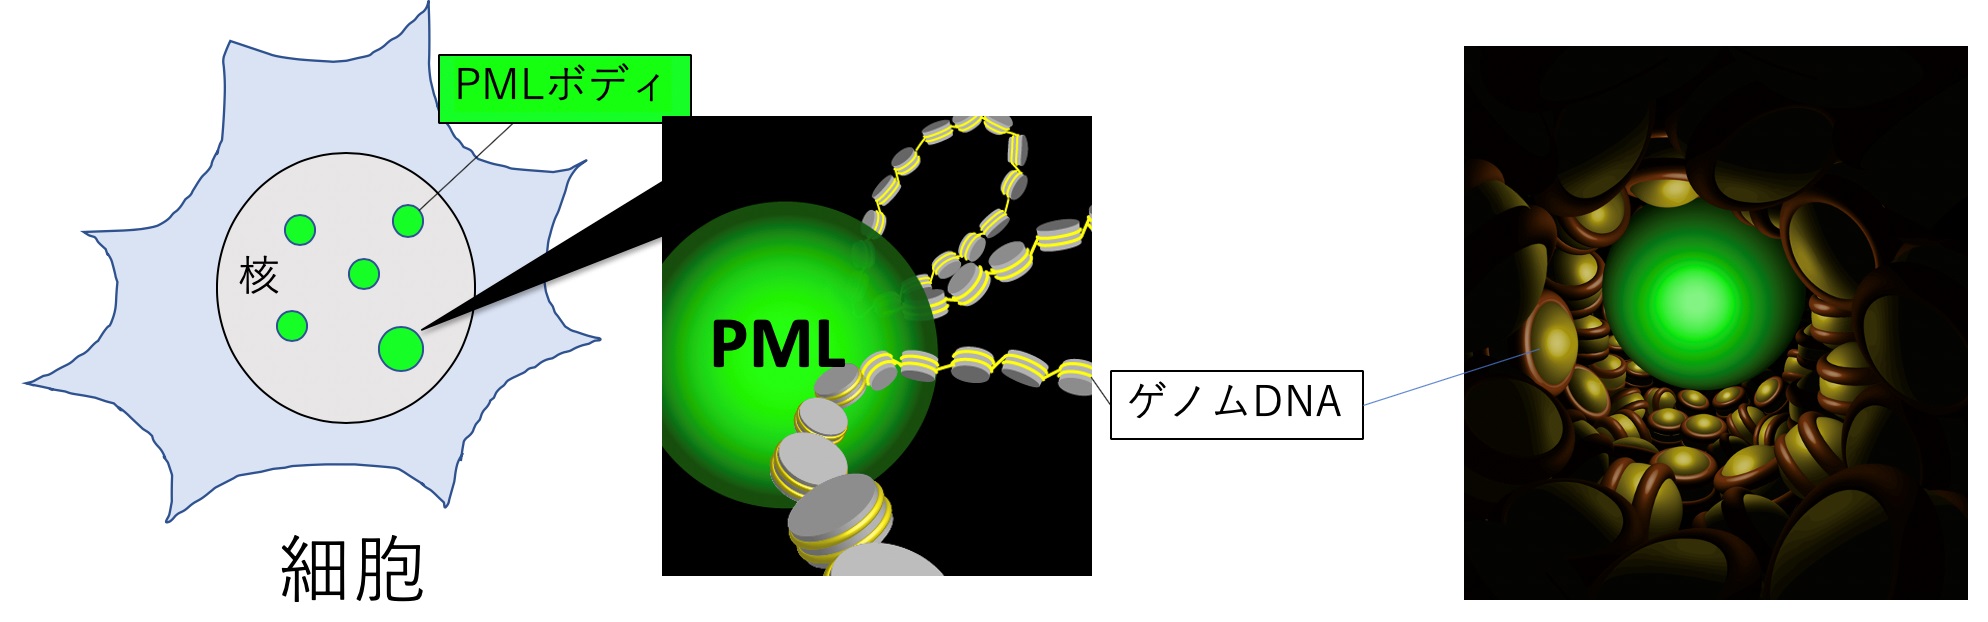 図１：PMLボディは細胞の核内にゲノムDNAと一緒に存在する球状の構造体